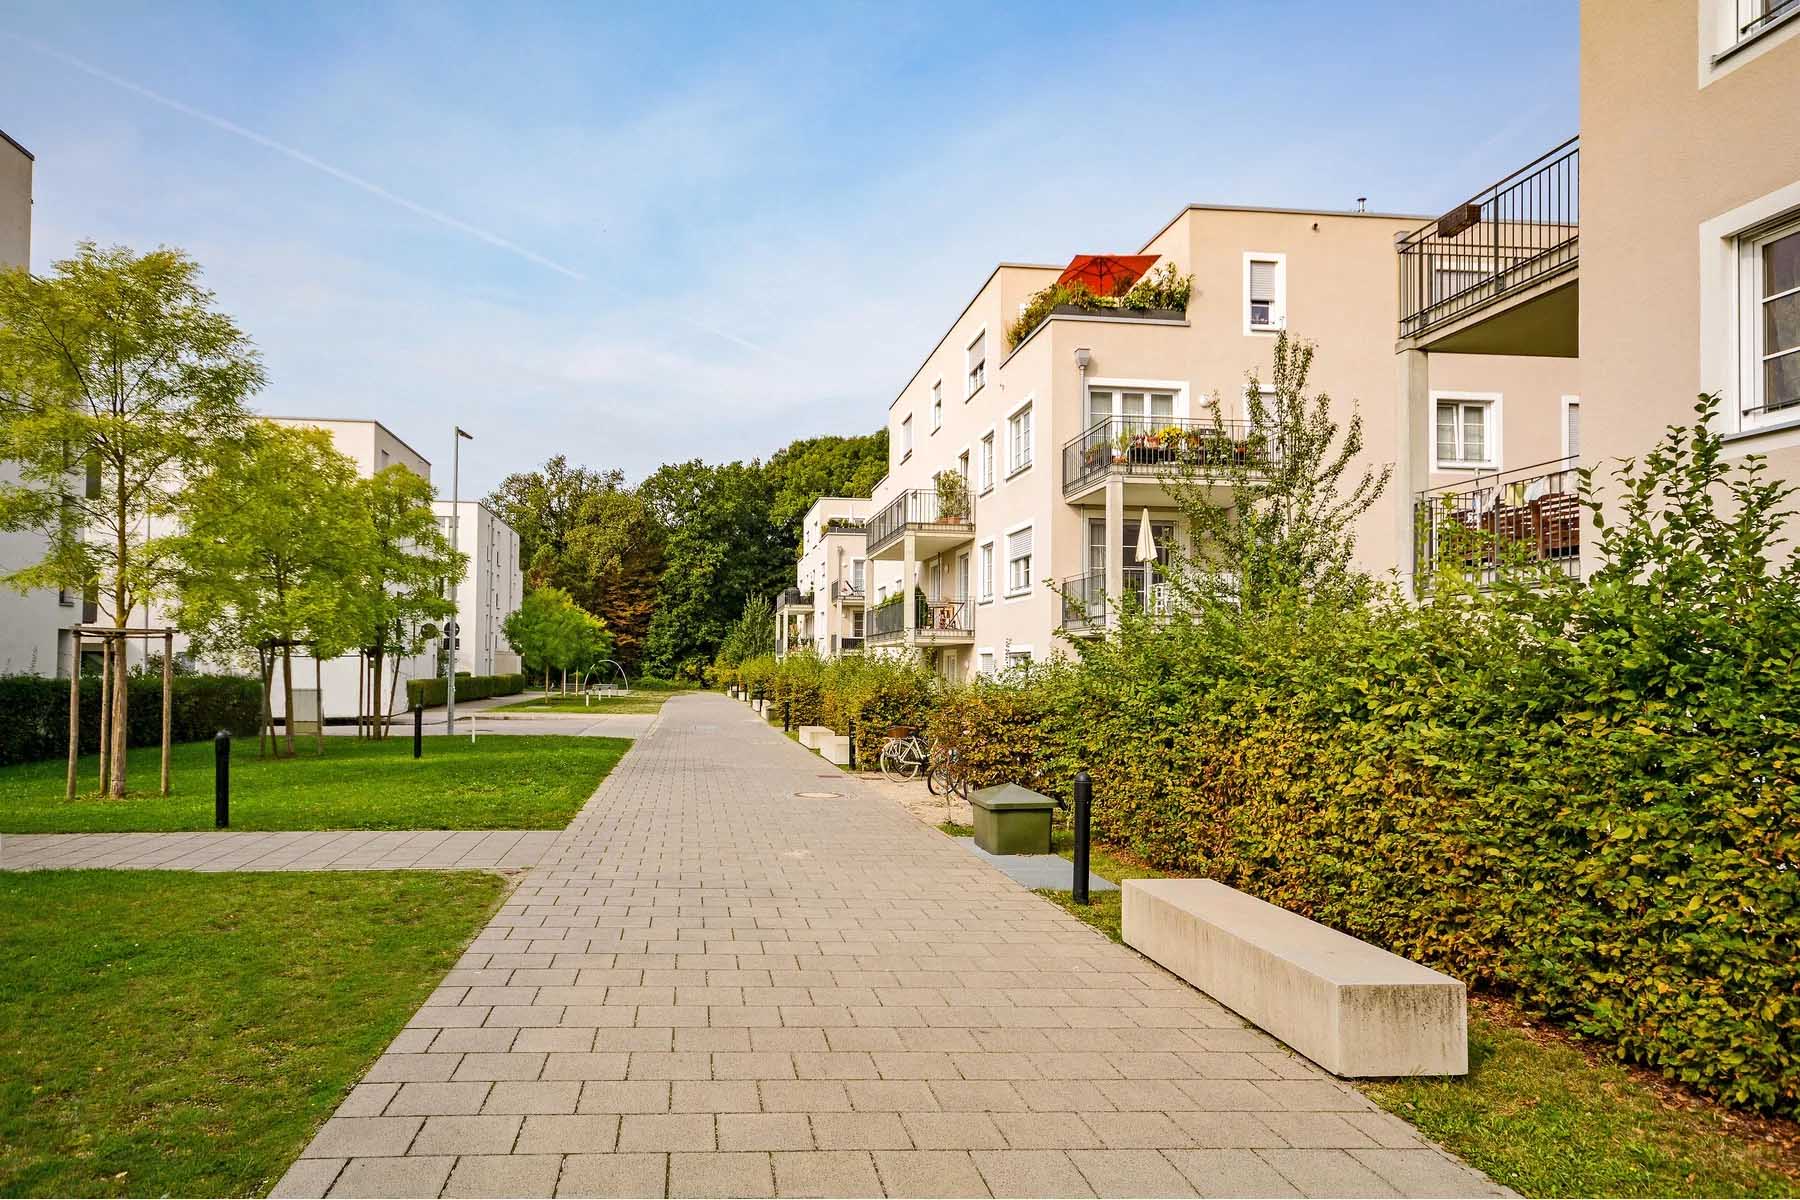 residential area in austria